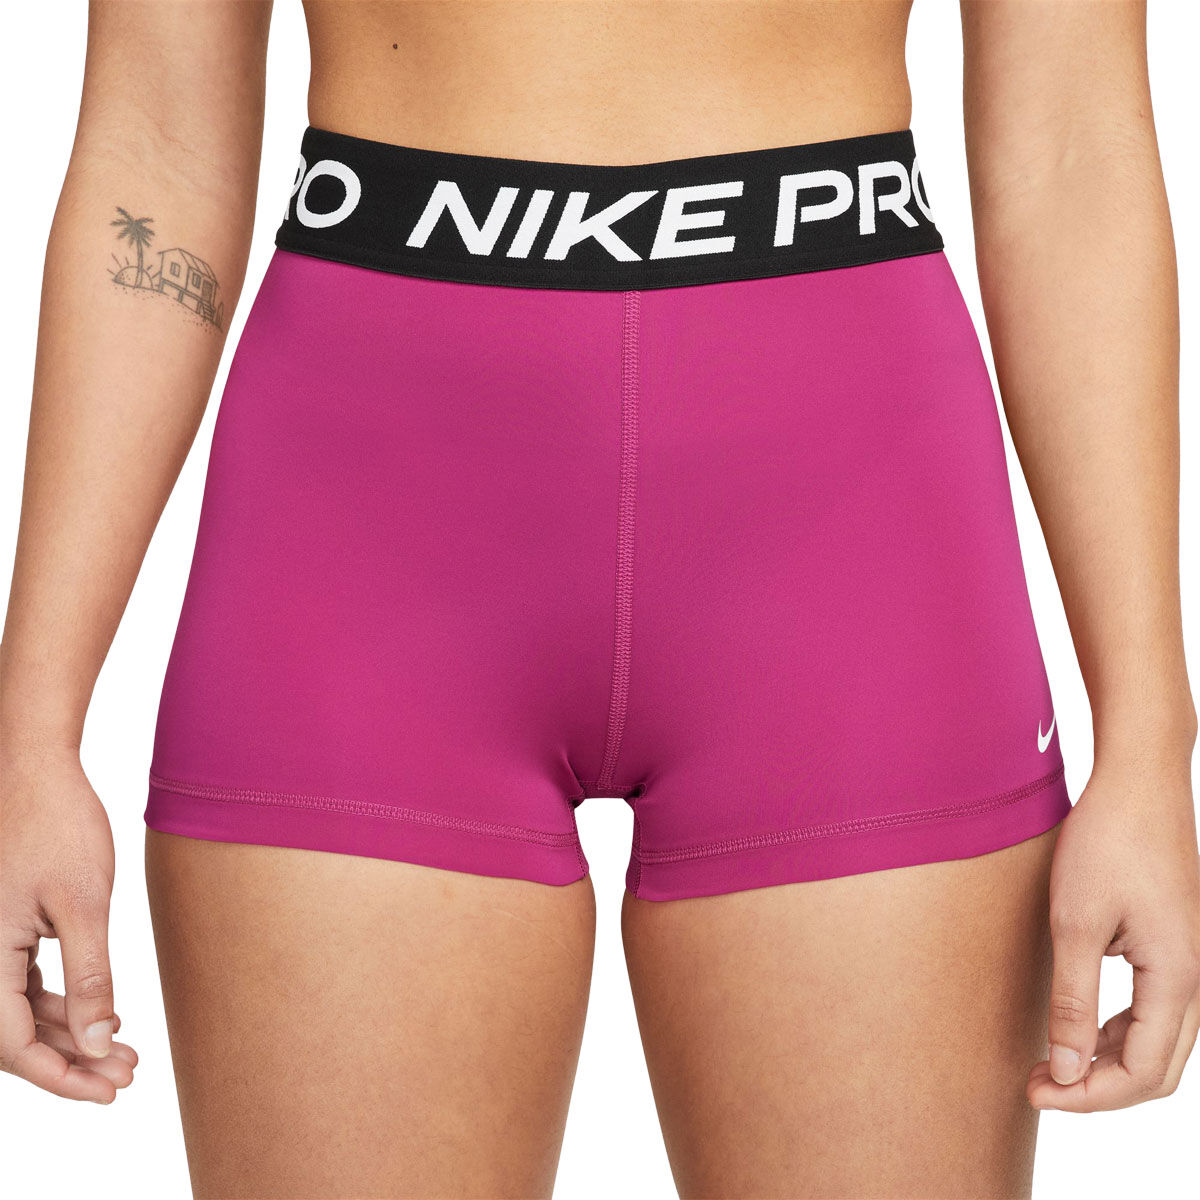 Nike, Shorts, Matching Pink Nike Pro Drifit Workout Set Sports Bra And  Spandex Shorts